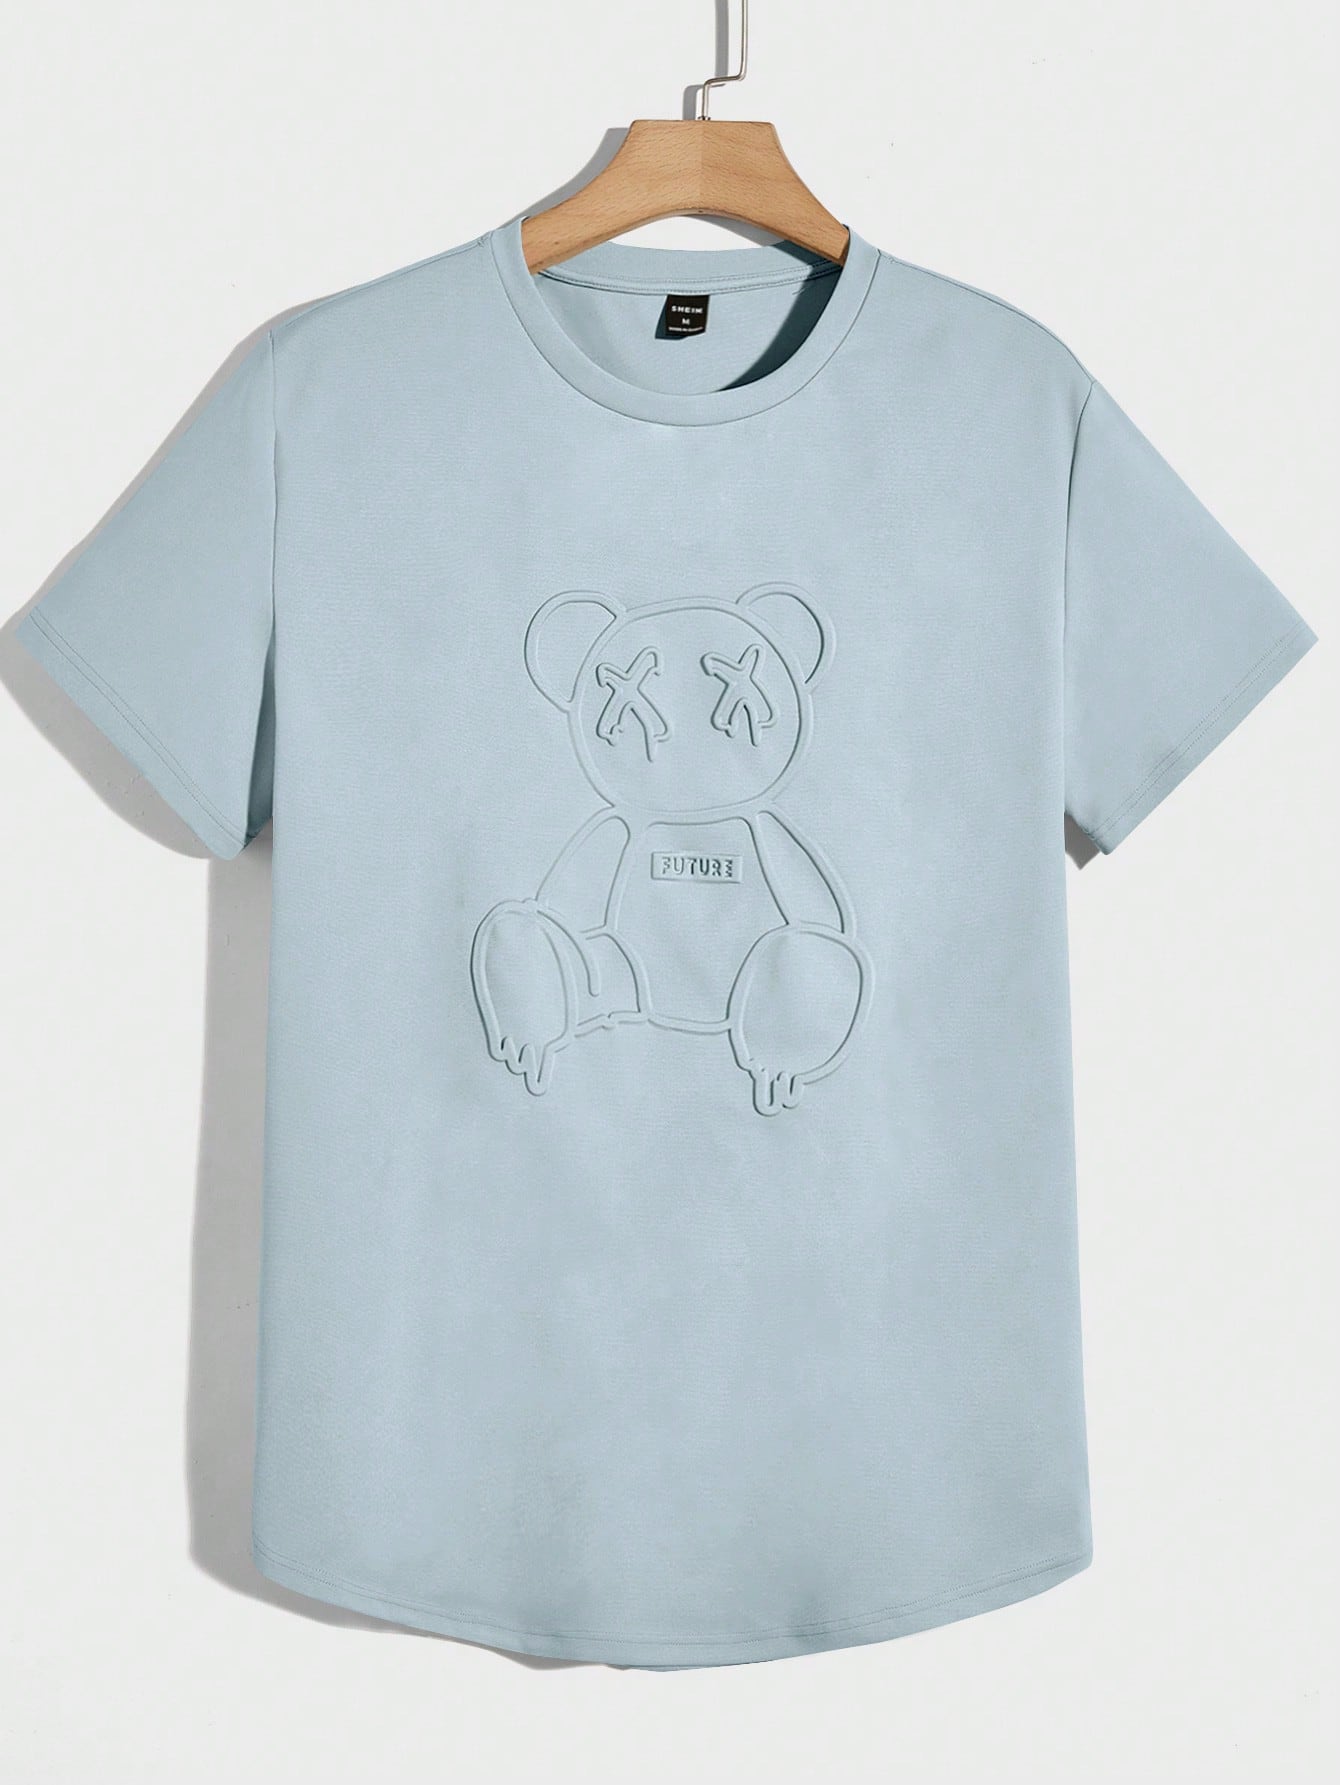 Мужская вязаная футболка Manfinity Hypemode с короткими рукавами и прессованным мишкой, голубые